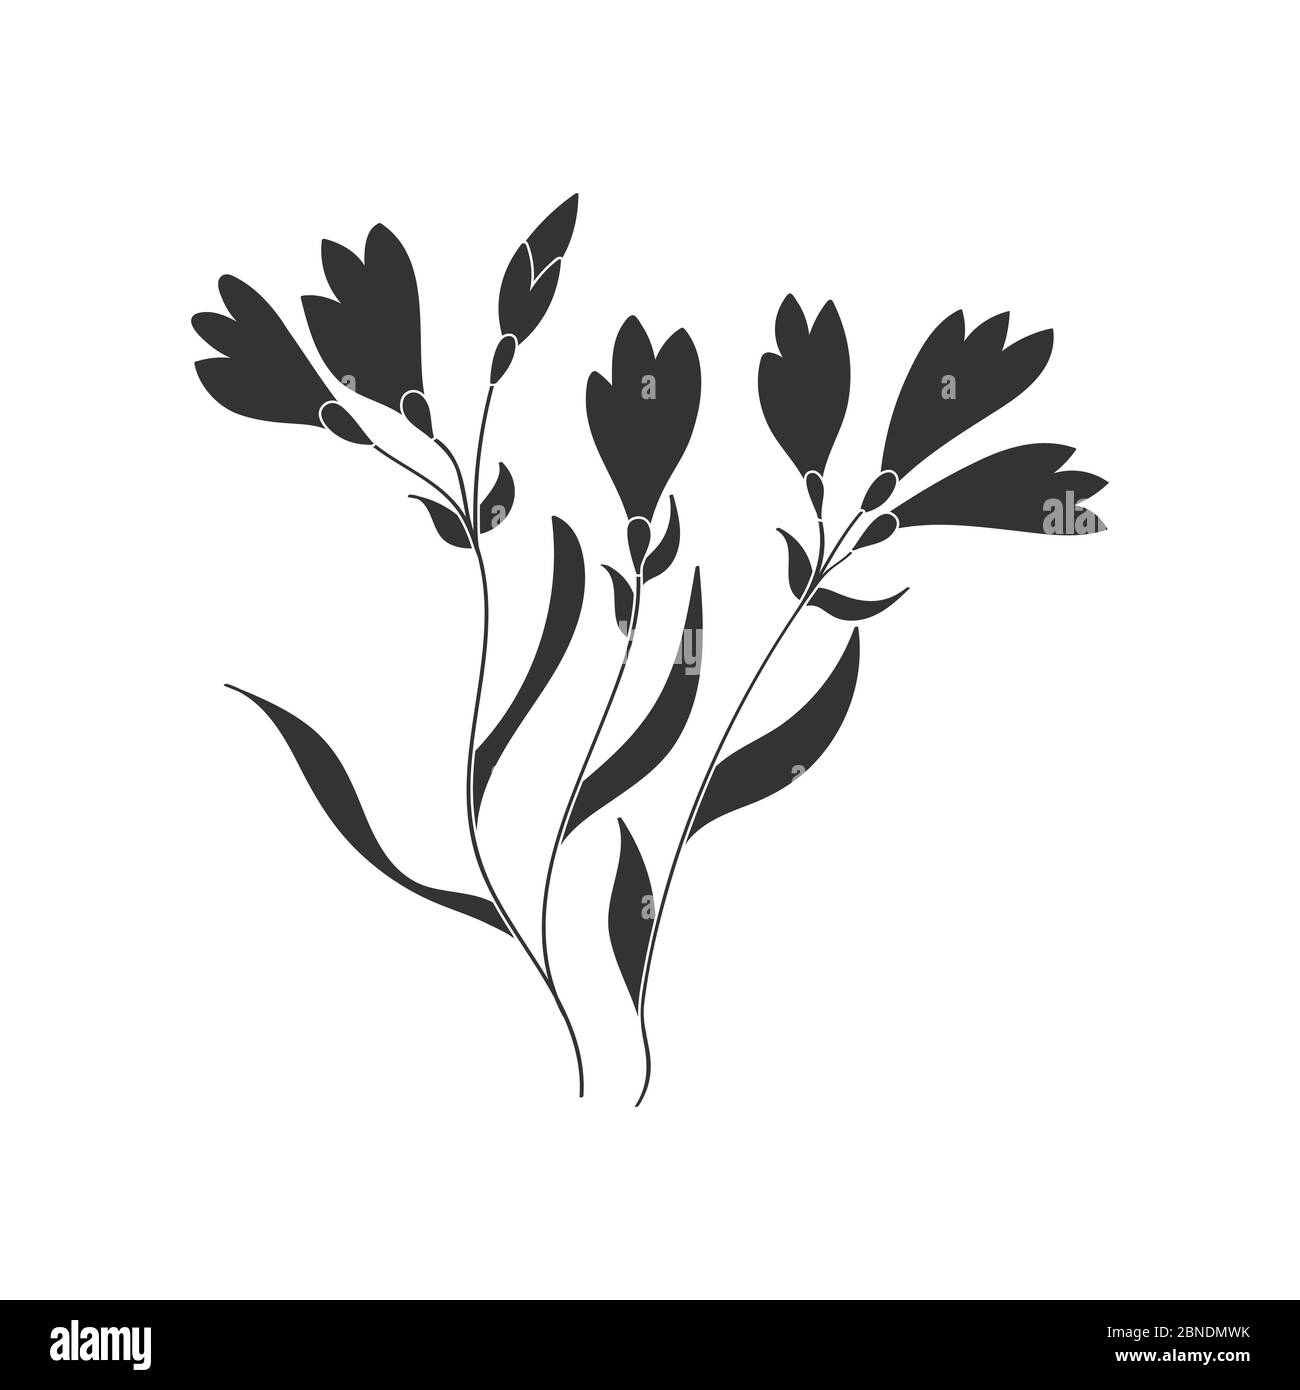 Vektorgrafik einer Blume. Stock Illustration isoliert auf einem weißen Hintergrund gefüllt Silhouette für thematische Zeichnungen und Scrapbooking Stock Vektor